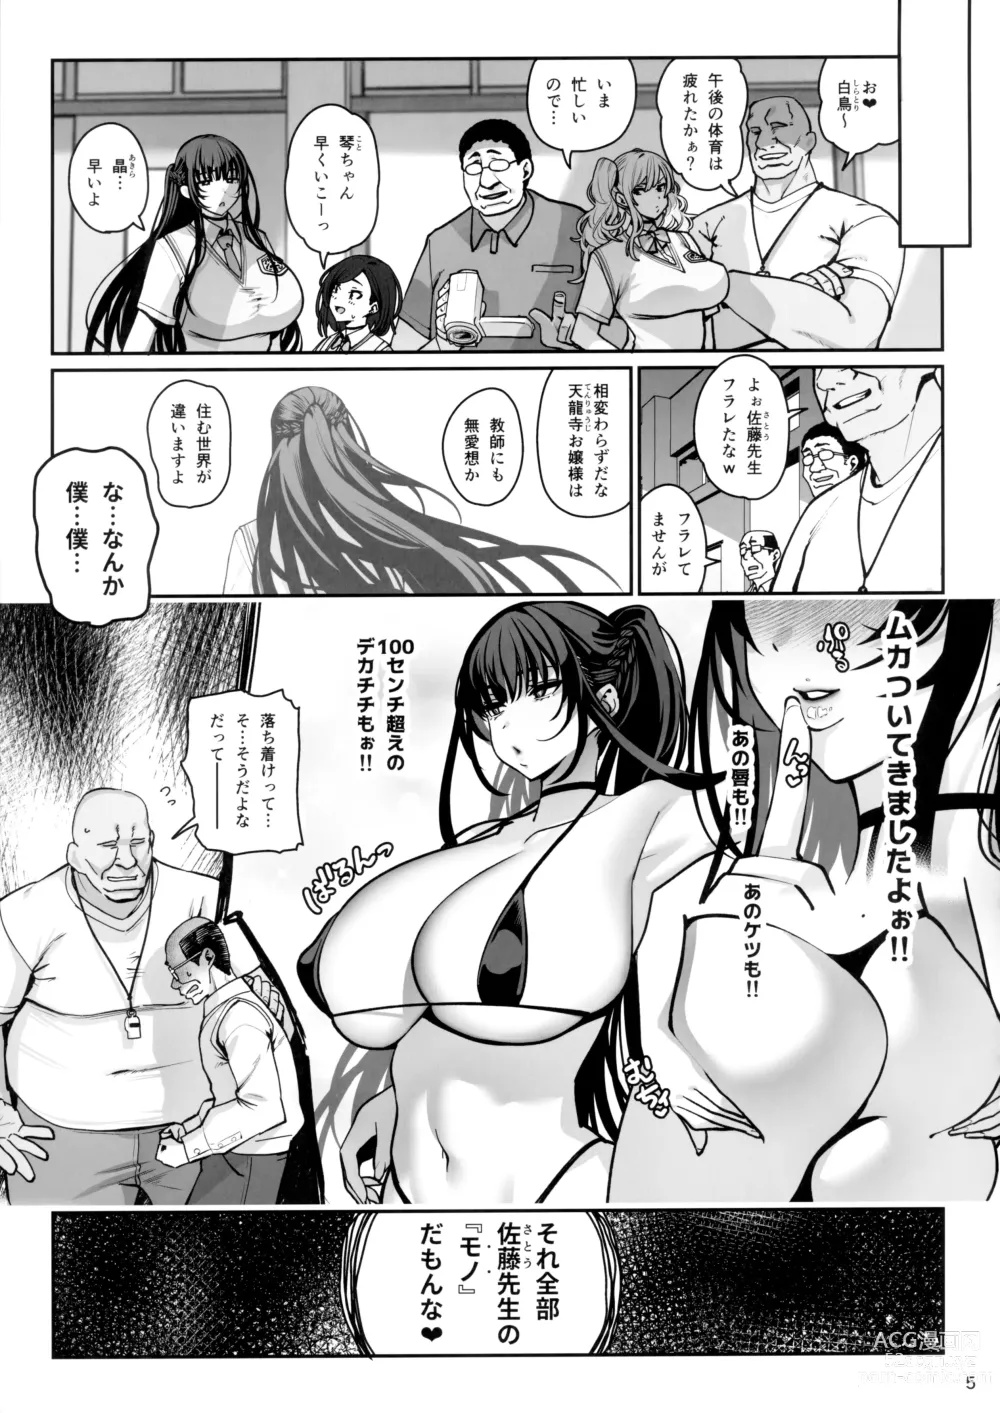 Page 6 of doujinshi Kanojo Saimin 3